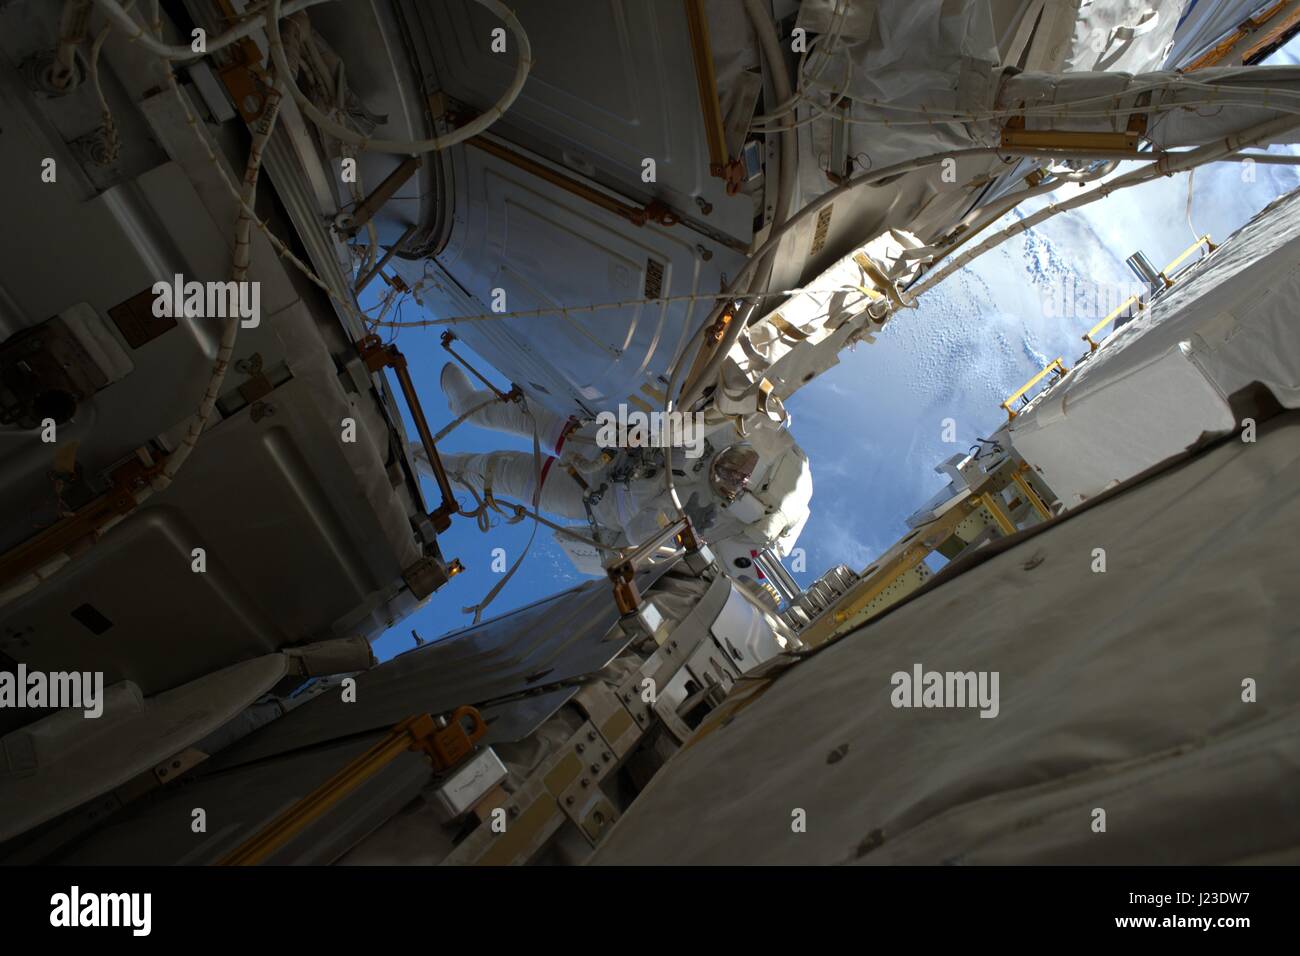 NASA-Expedition 50 erstklassige Besatzung Astronaut, die amerikanische Shane Kimbrough auf der internationalen Raumstation in der Erdumlaufbahn während einen Weltraumspaziergang 13. Januar 2017 arbeitet.    (Foto von der NASA über Planetpix) Stockfoto